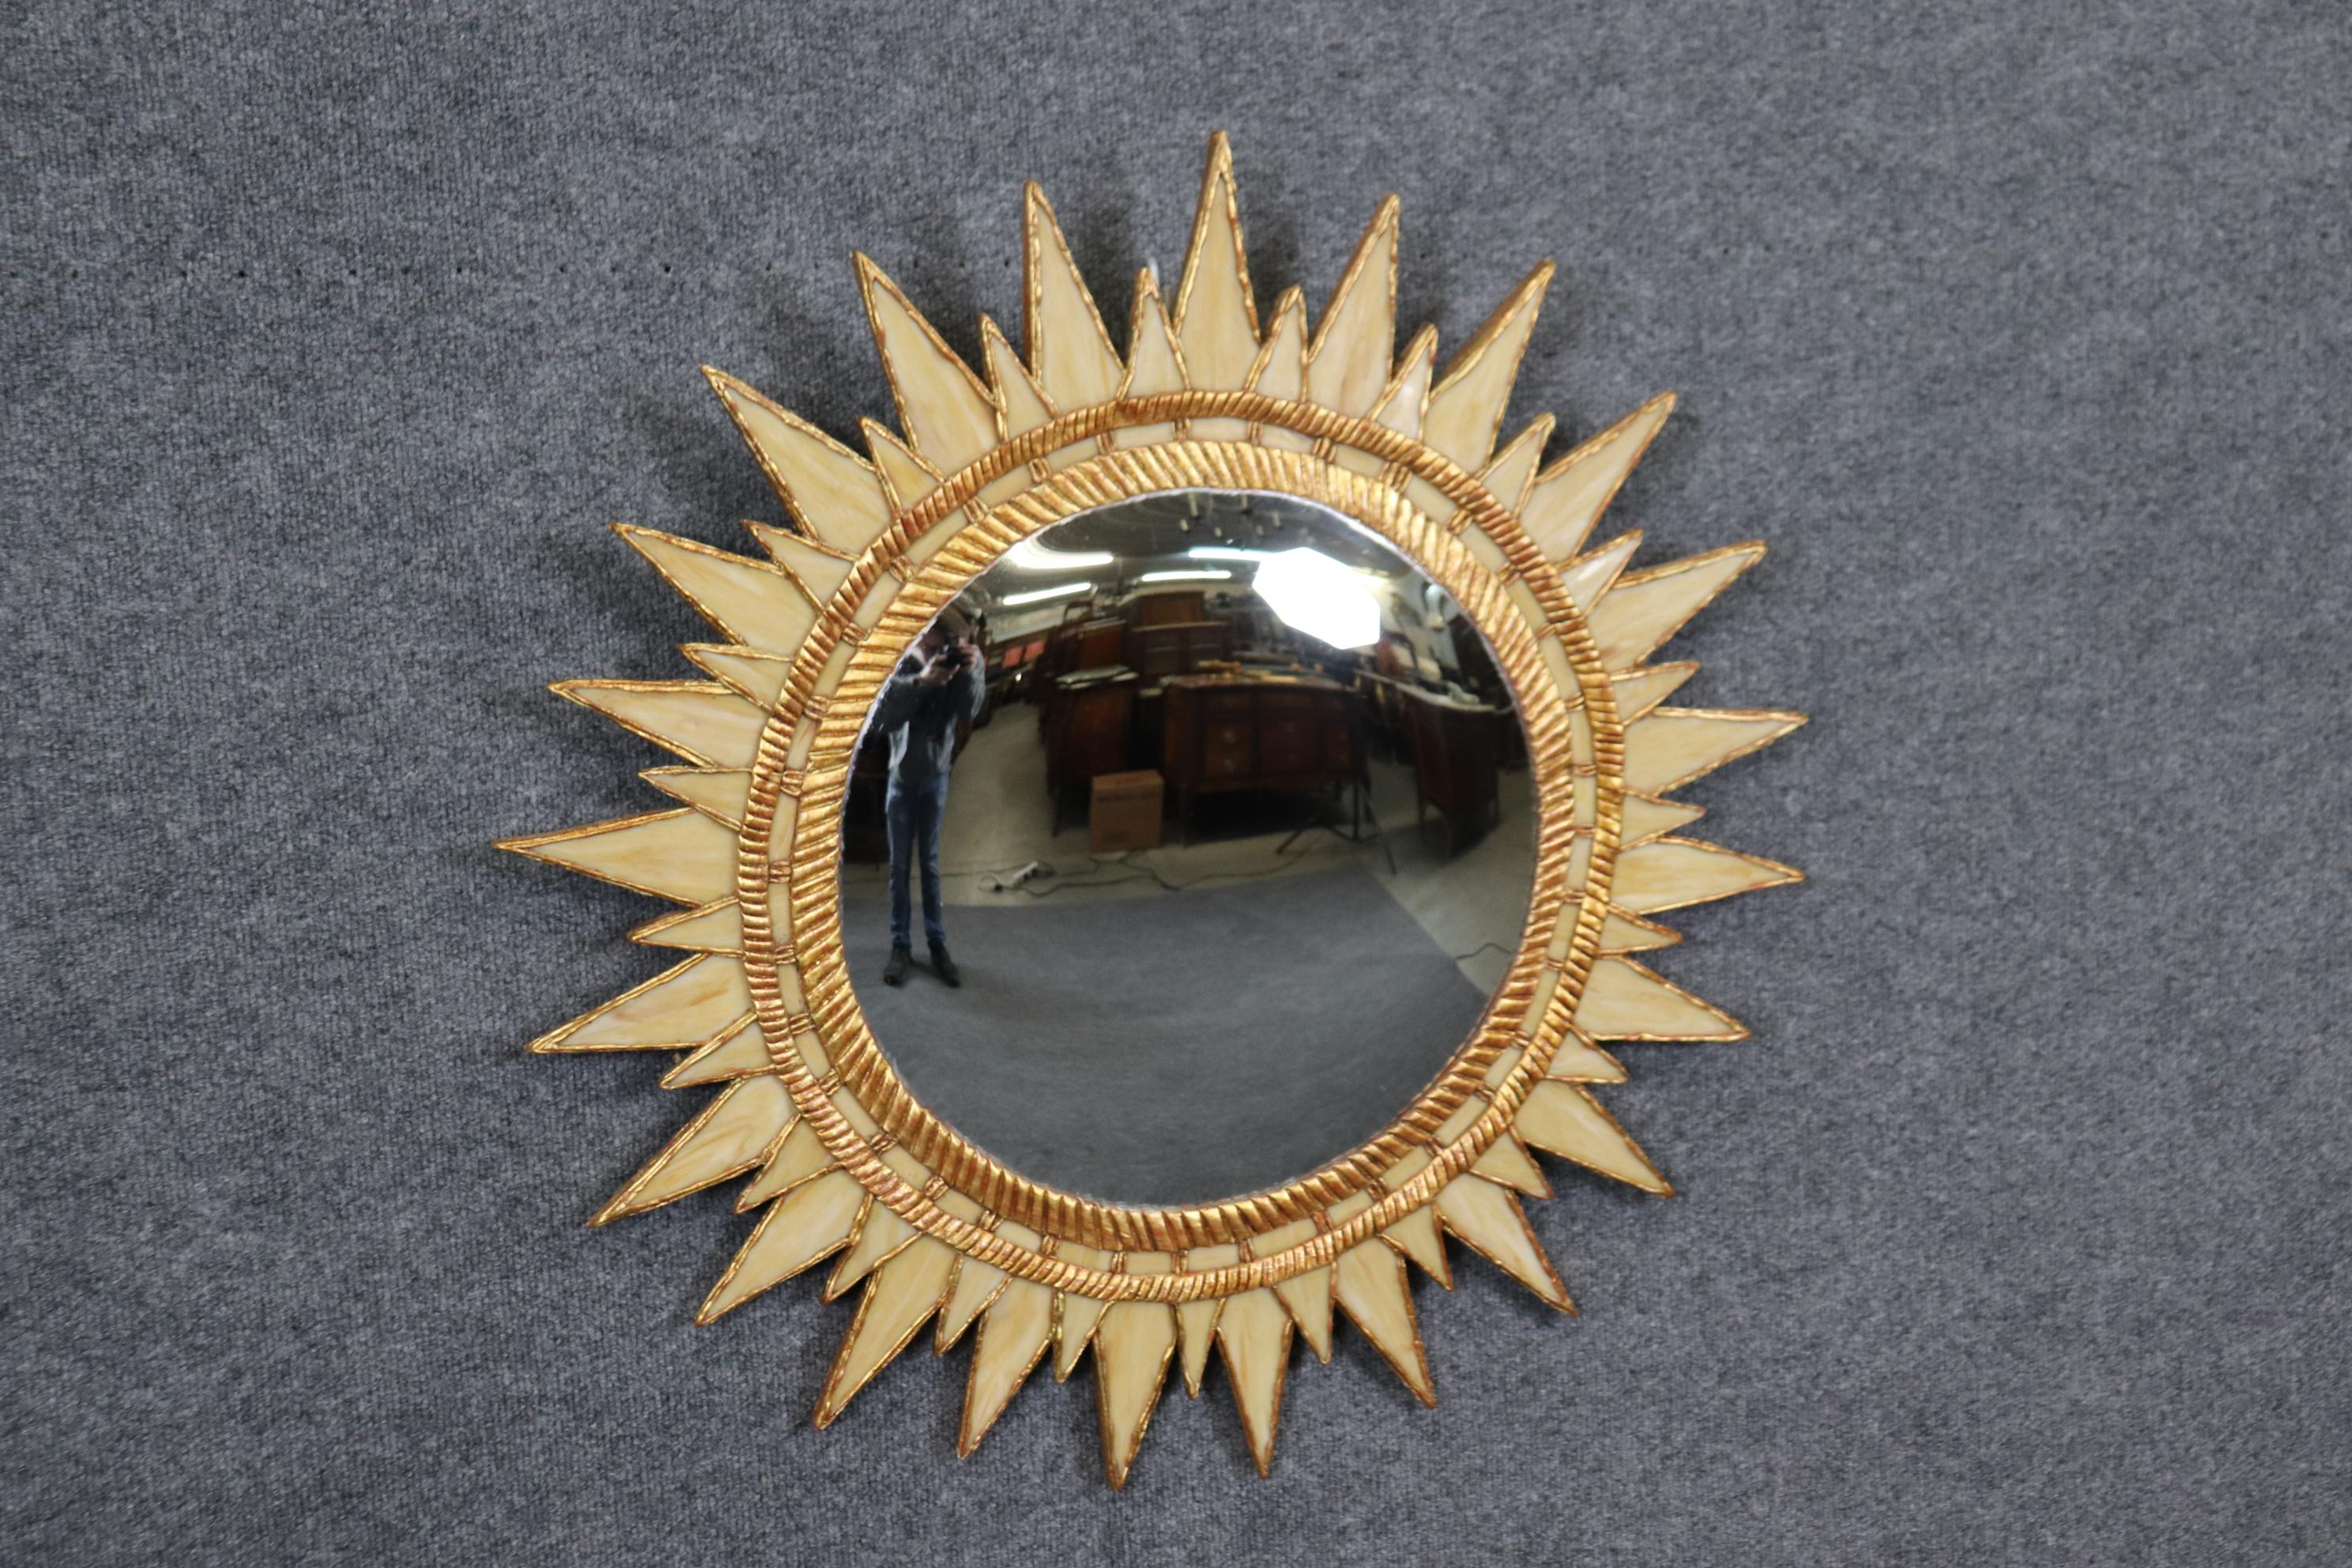 Il s'agit d'un miroir rare et unique composé de panneaux en verre de scorie dans un cadre en bois de hêtre de couleur crème et finition dorée à la feuille d'or. Le miroir est absolument exceptionnel - un véritable survivant du temps sans aucun